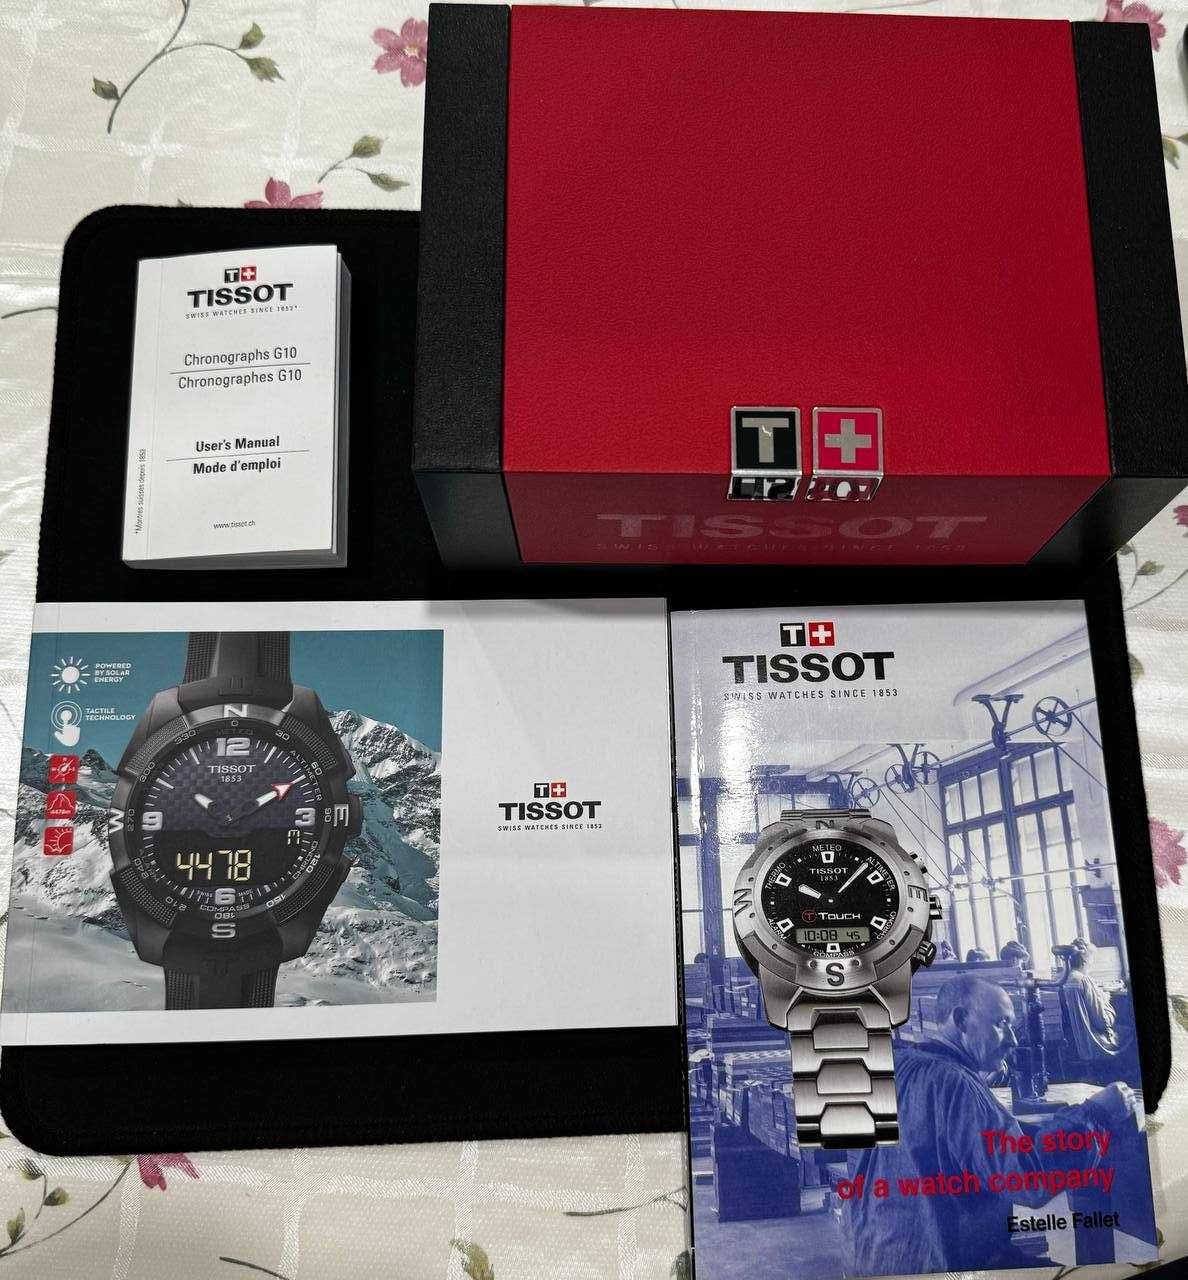 Швейцарские часы Tissot PRC 200